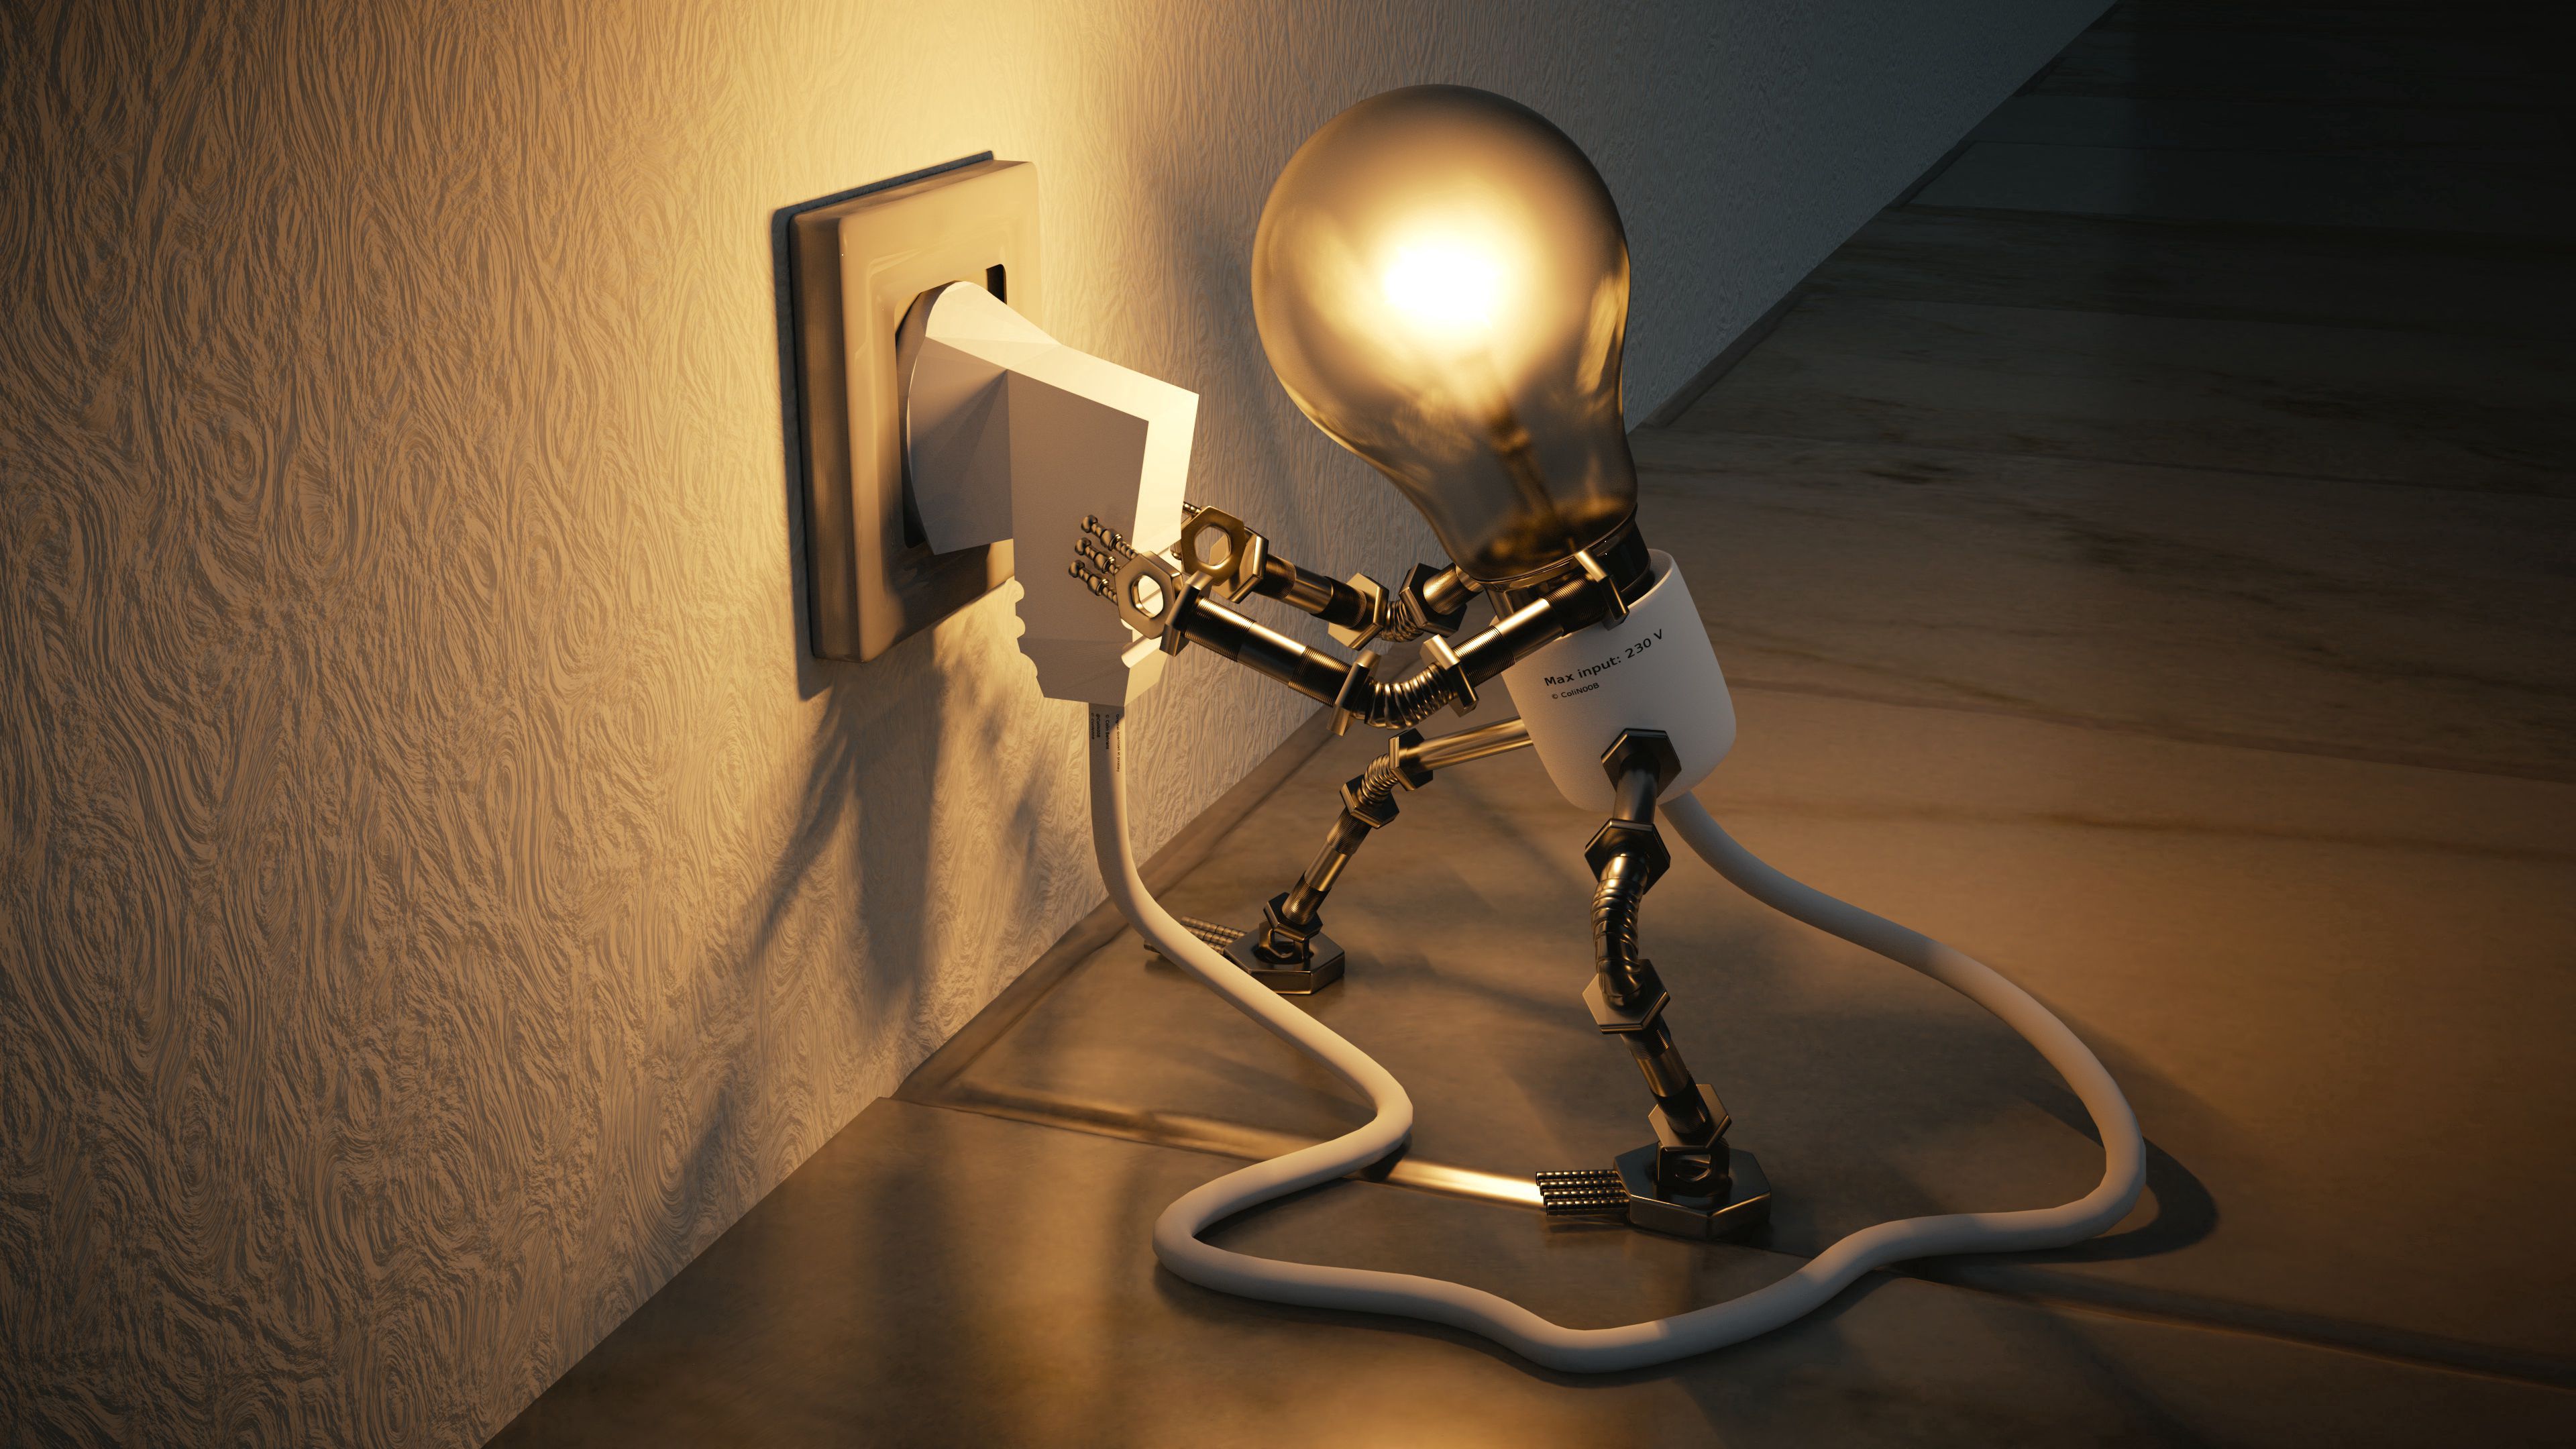 3d, socket, lamp, electricity, idea, rosette